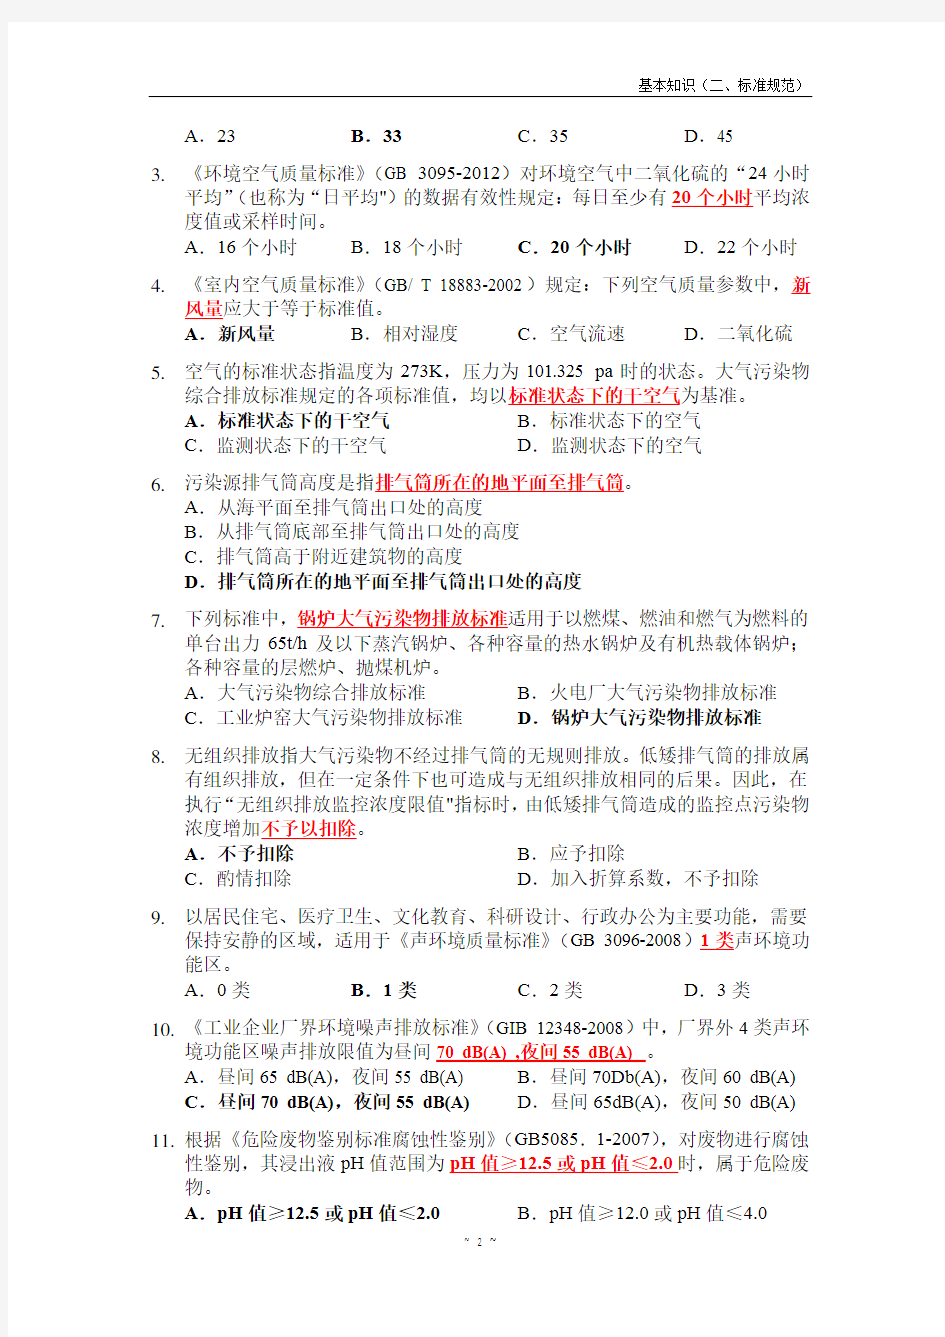 江苏省环境监测上岗证考试试题集二(基础知识-标准规范)